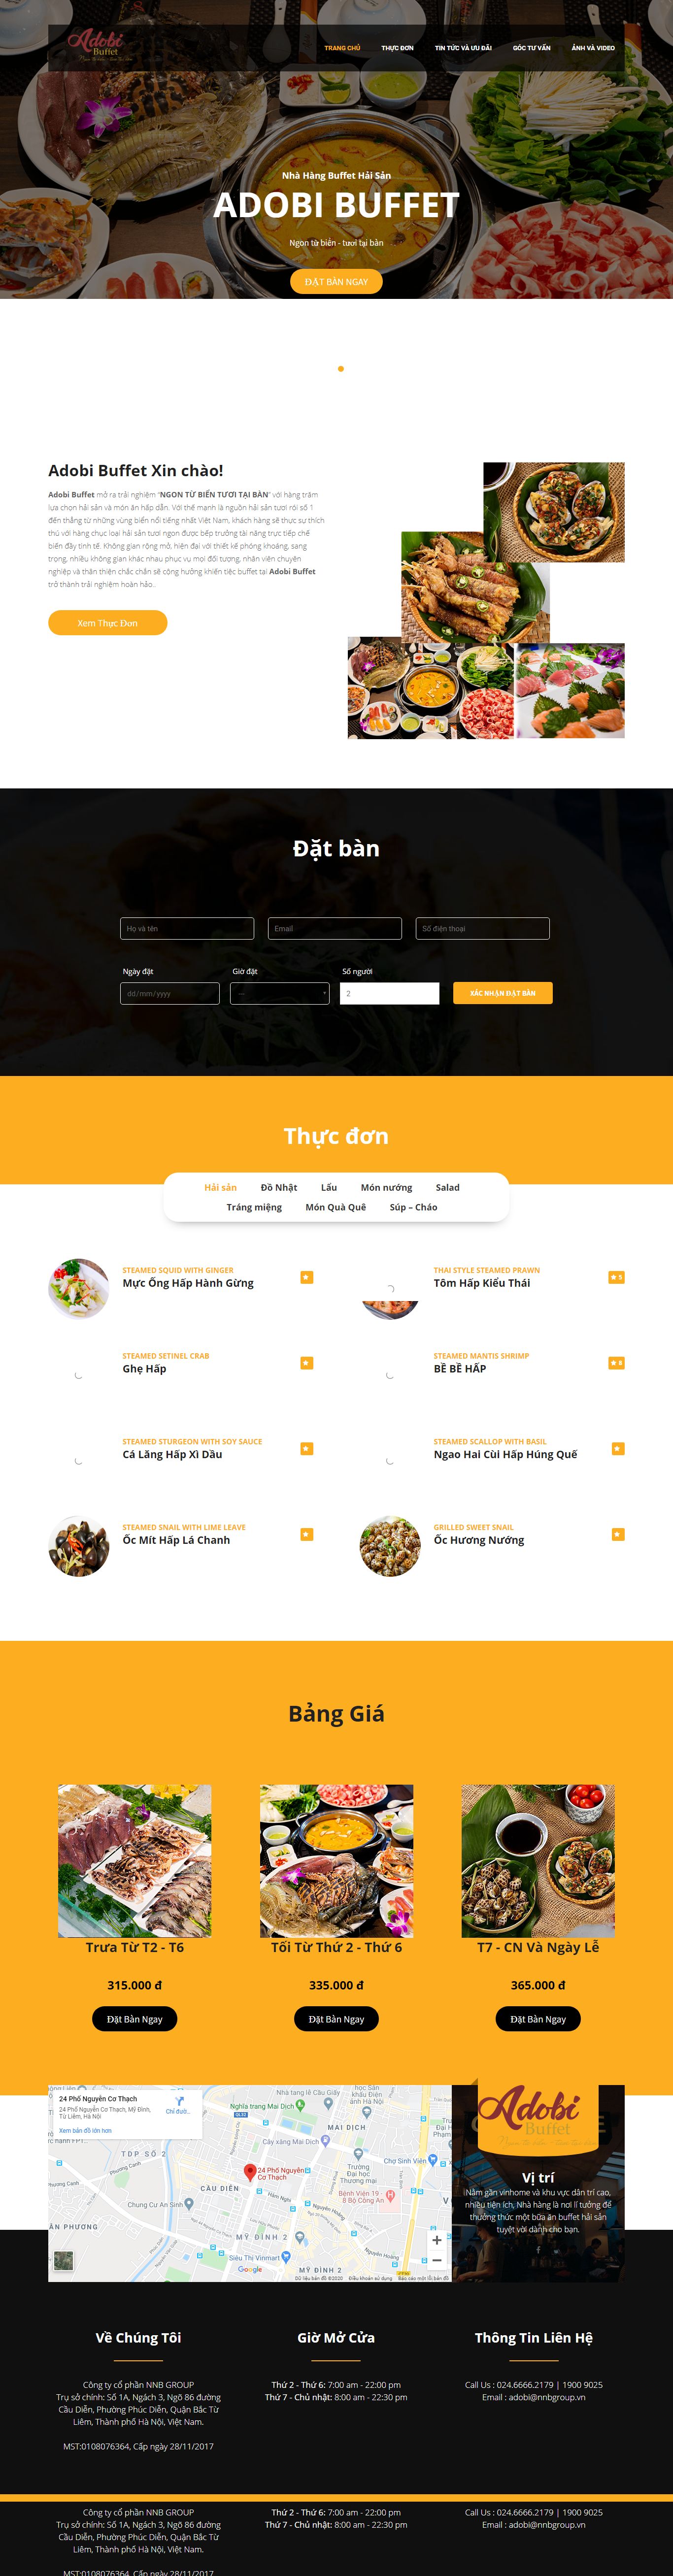 Thiết kế Website nhà hàng - adobibuffet.vn